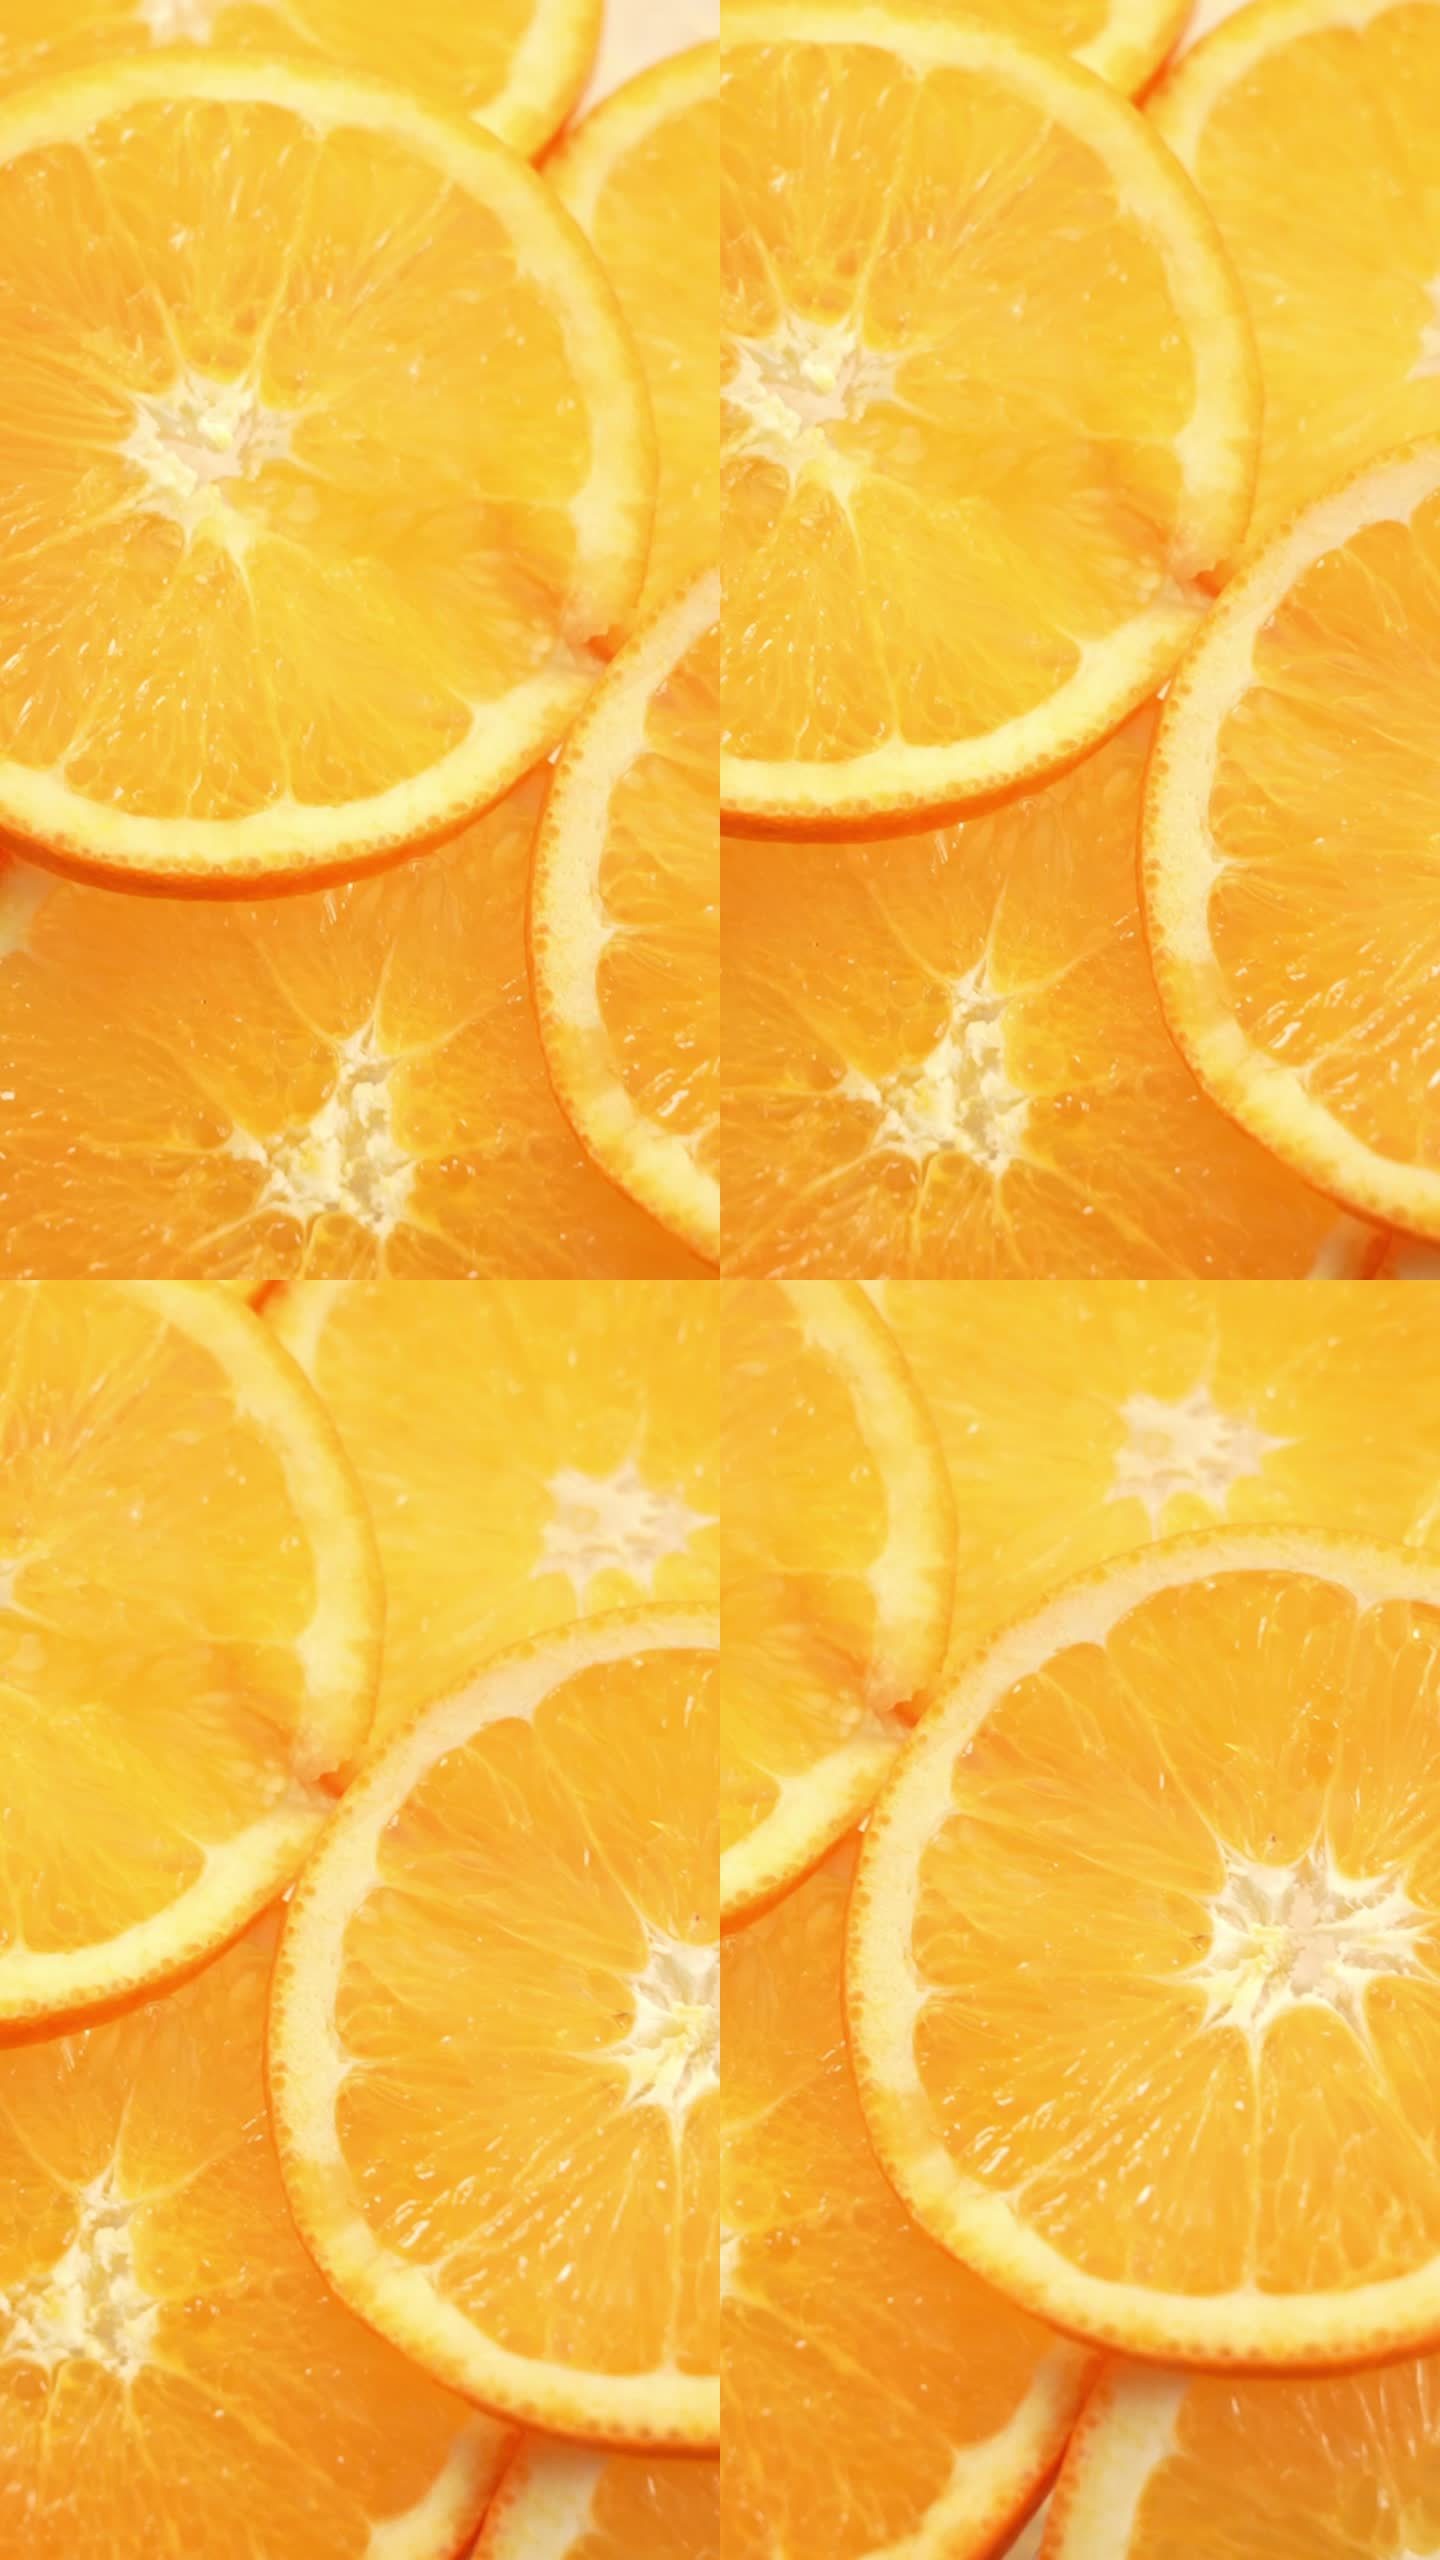 橙子运镜新鲜水果高清